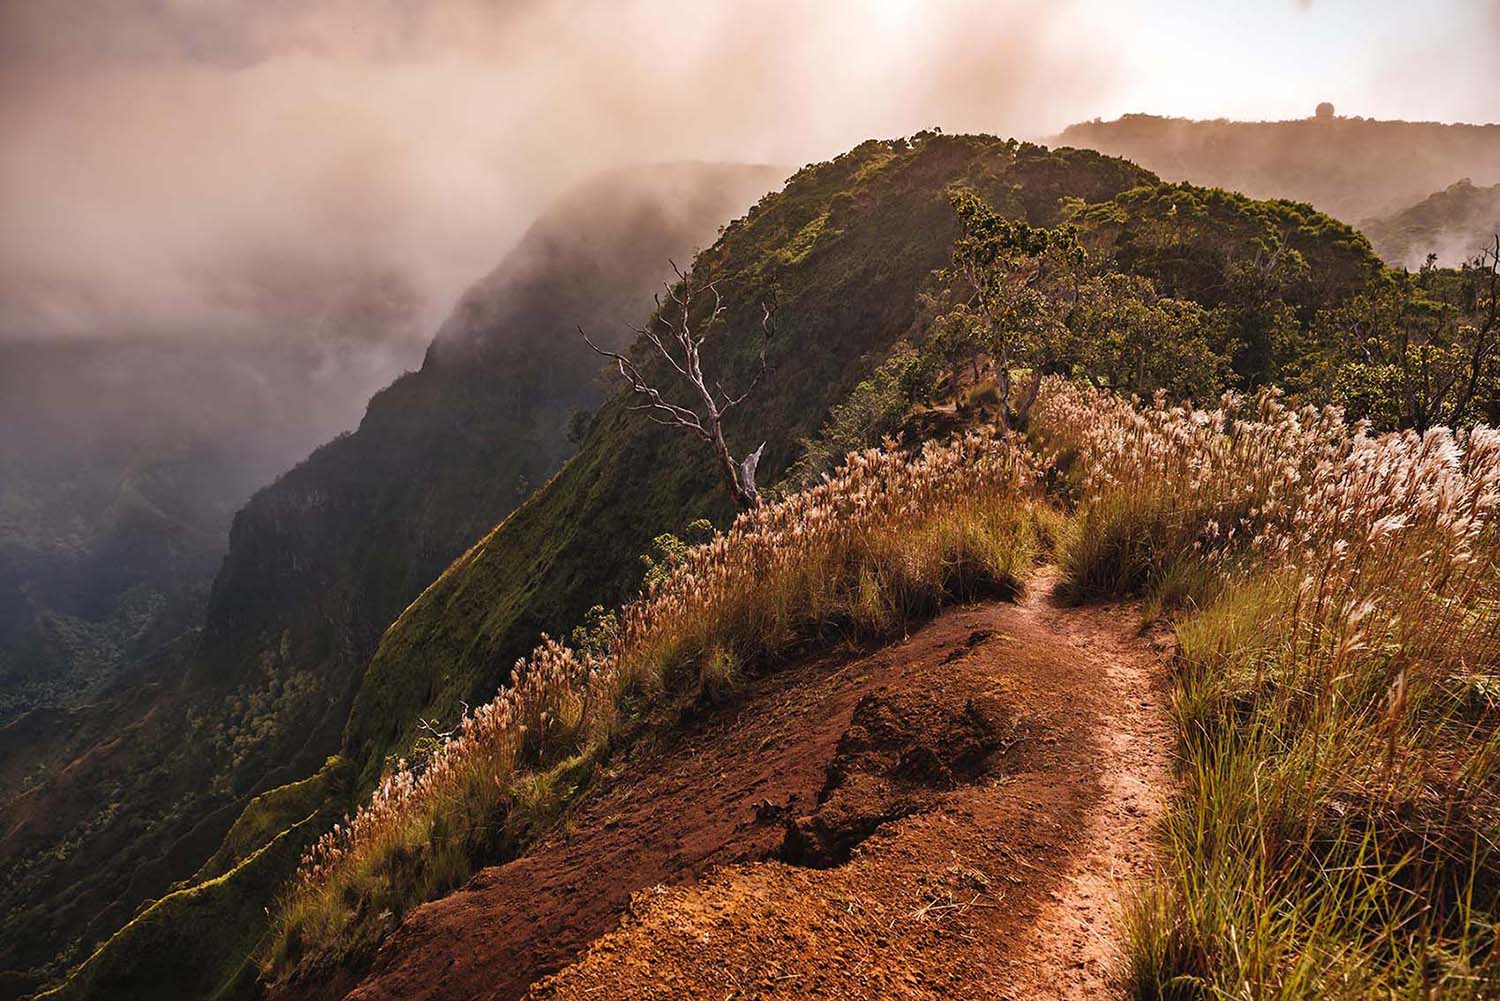 Sunrise mountain hike in Kauai